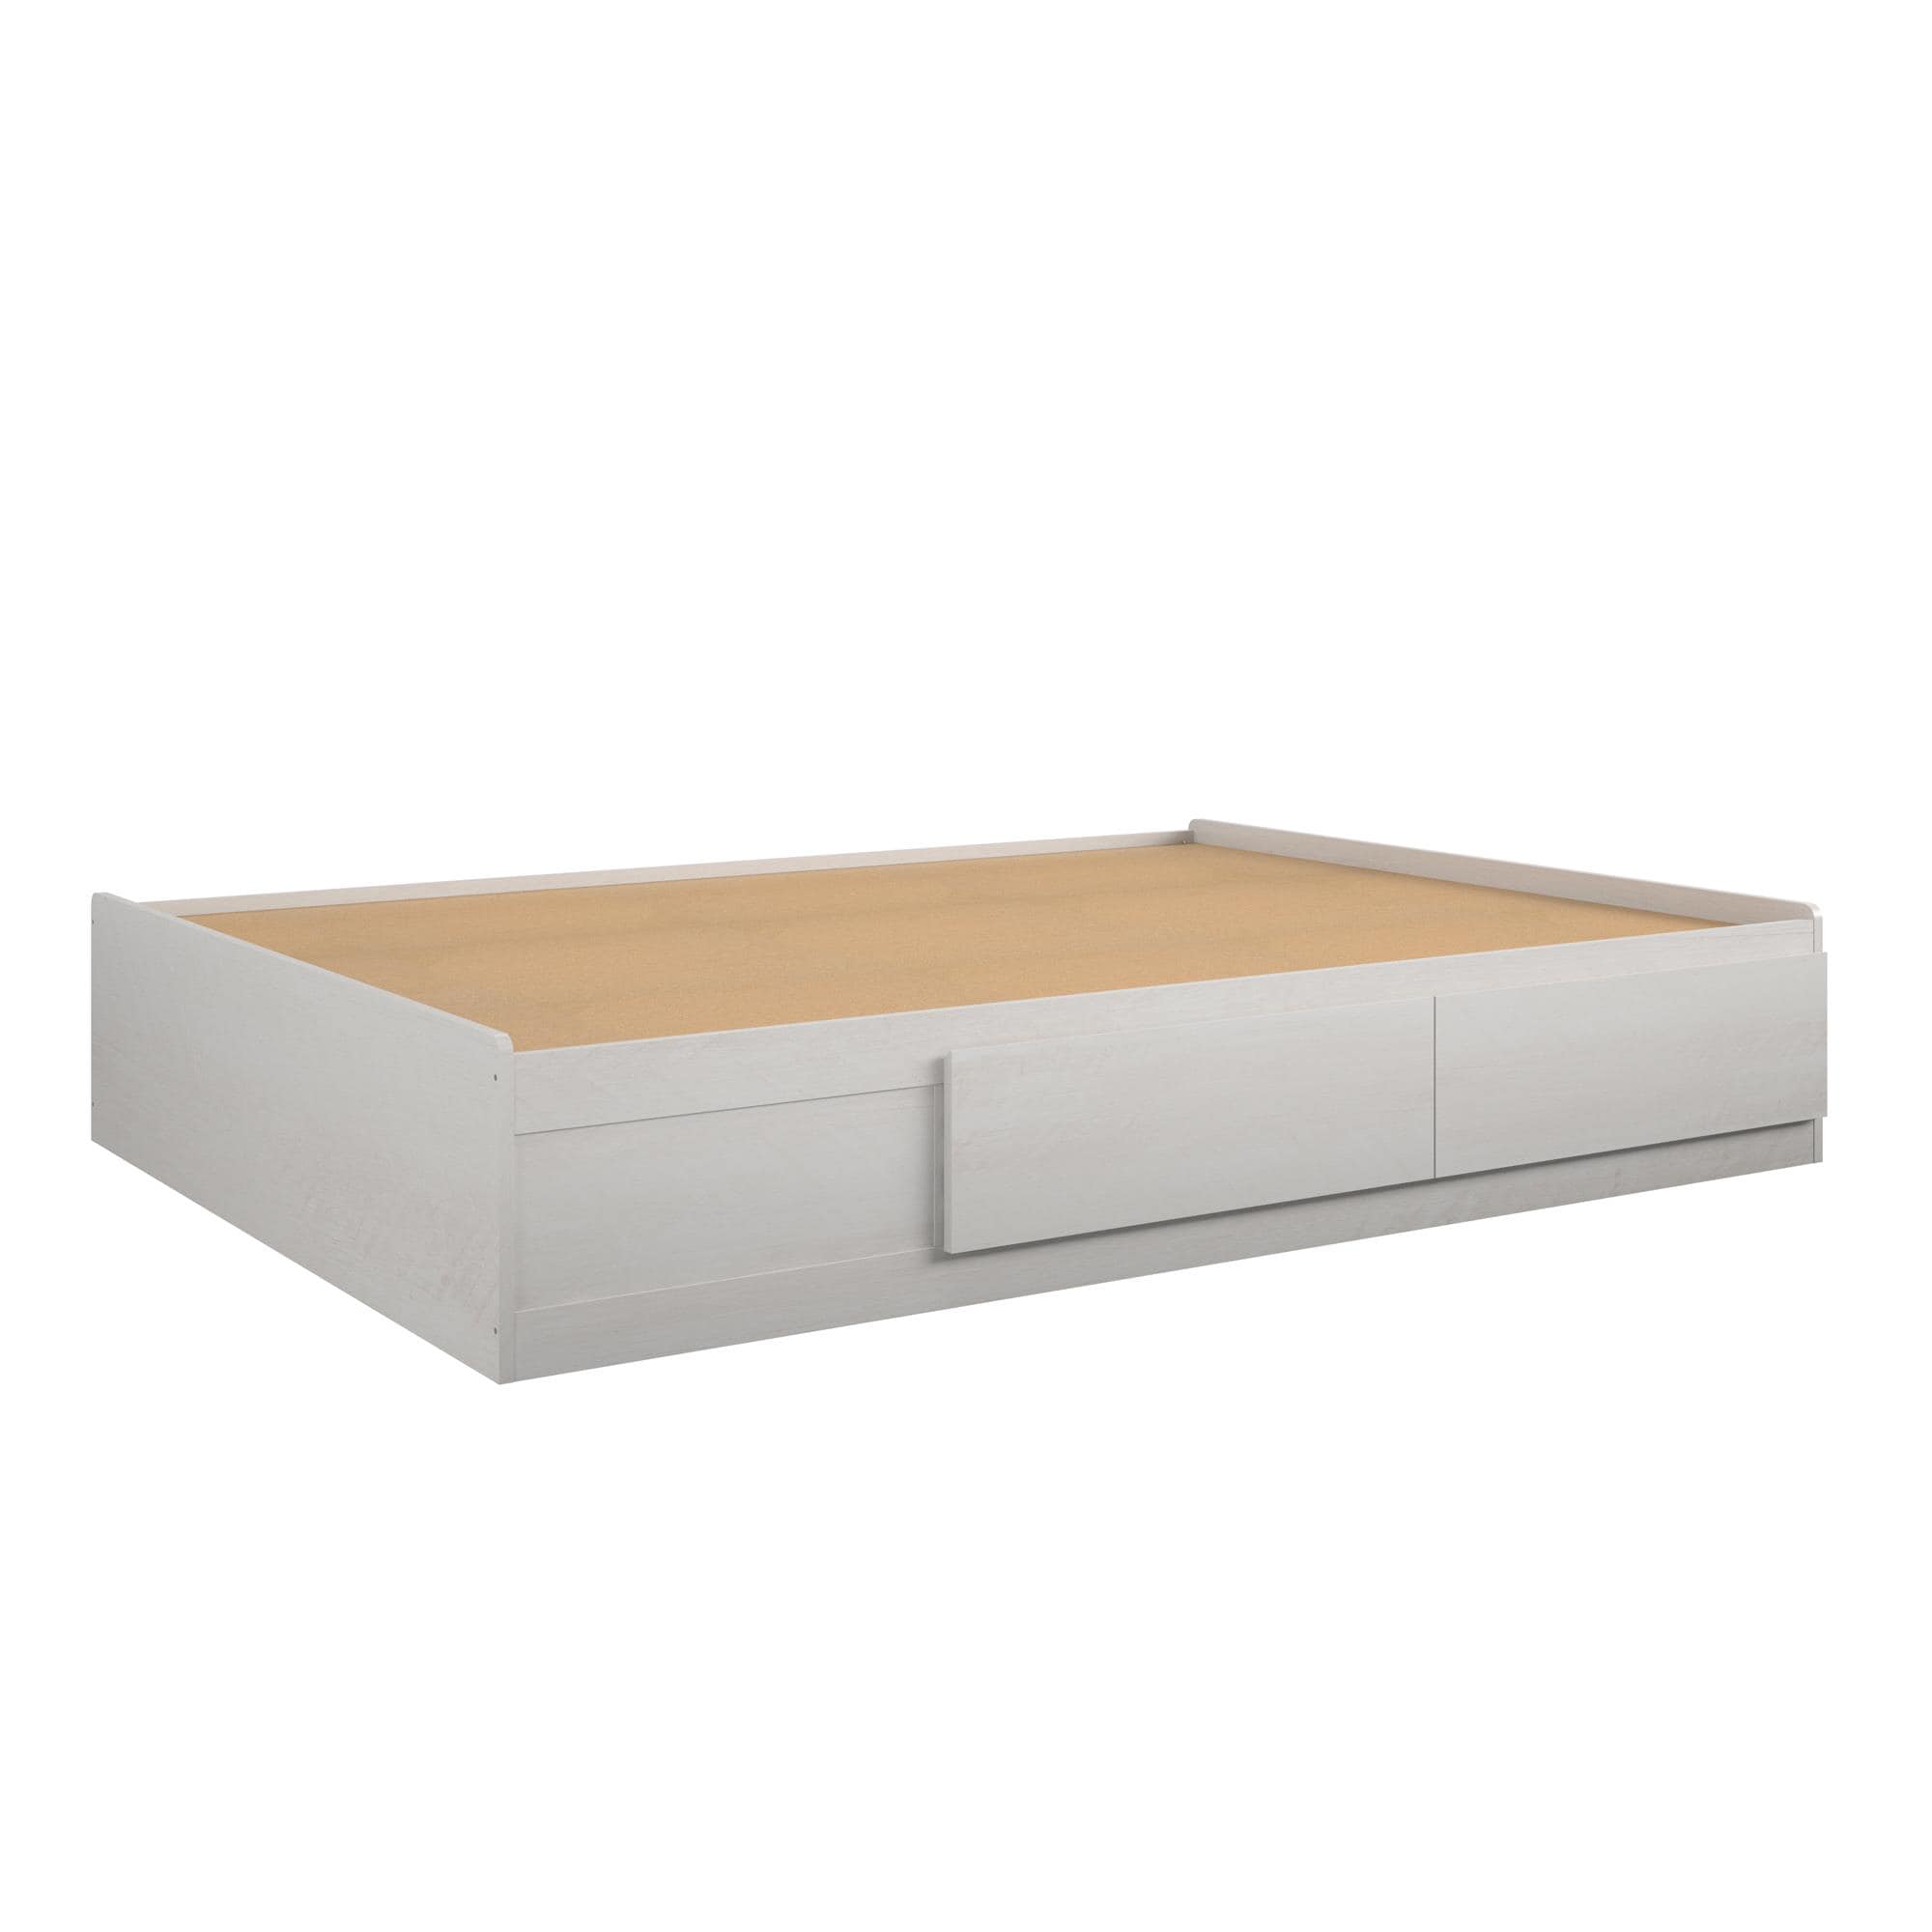 Ameriwood Home Platform Bed Ivory Oak, Ameriwood Twin Storage Bed Assembly